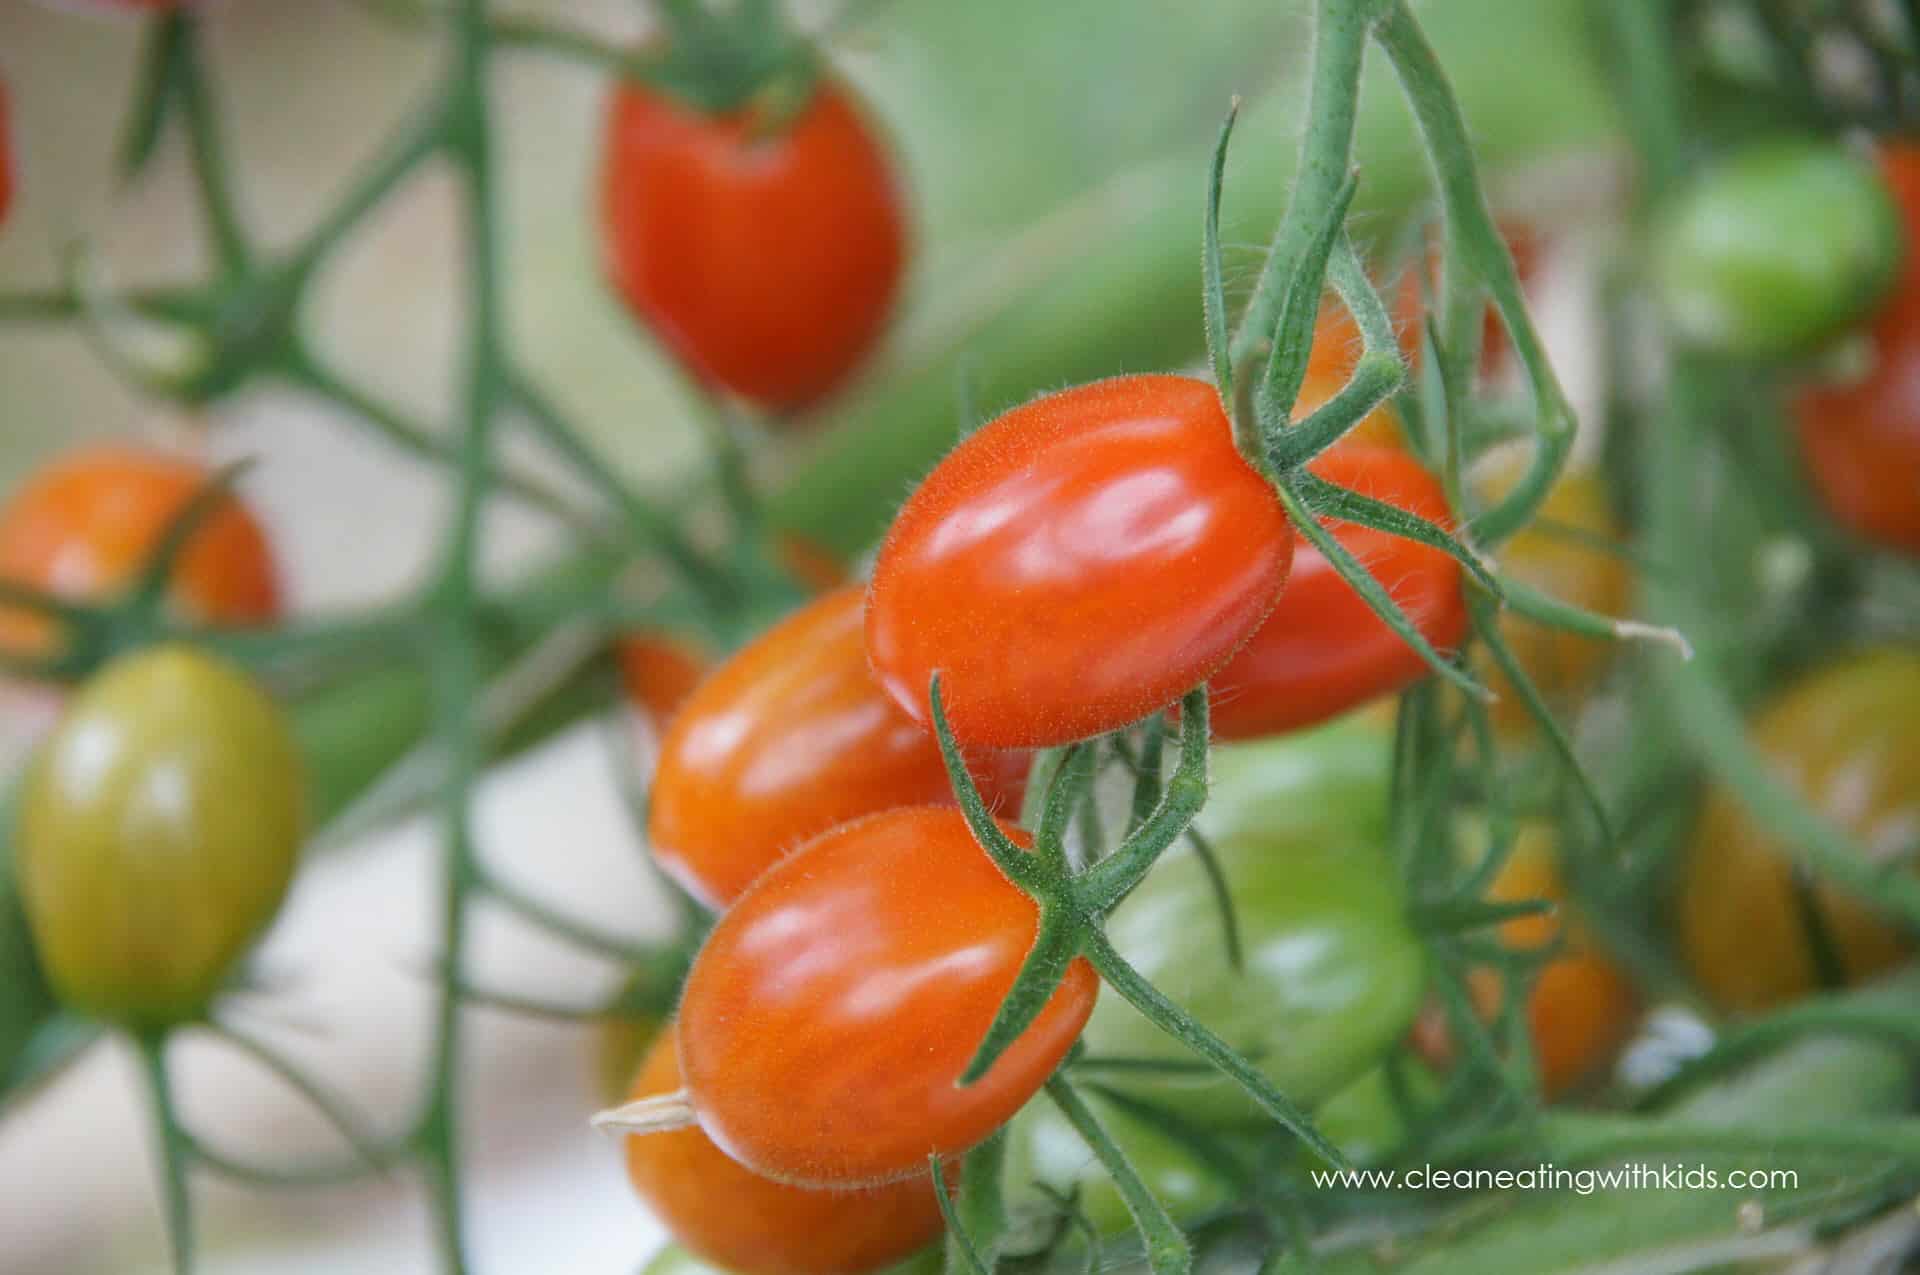 tomato-2